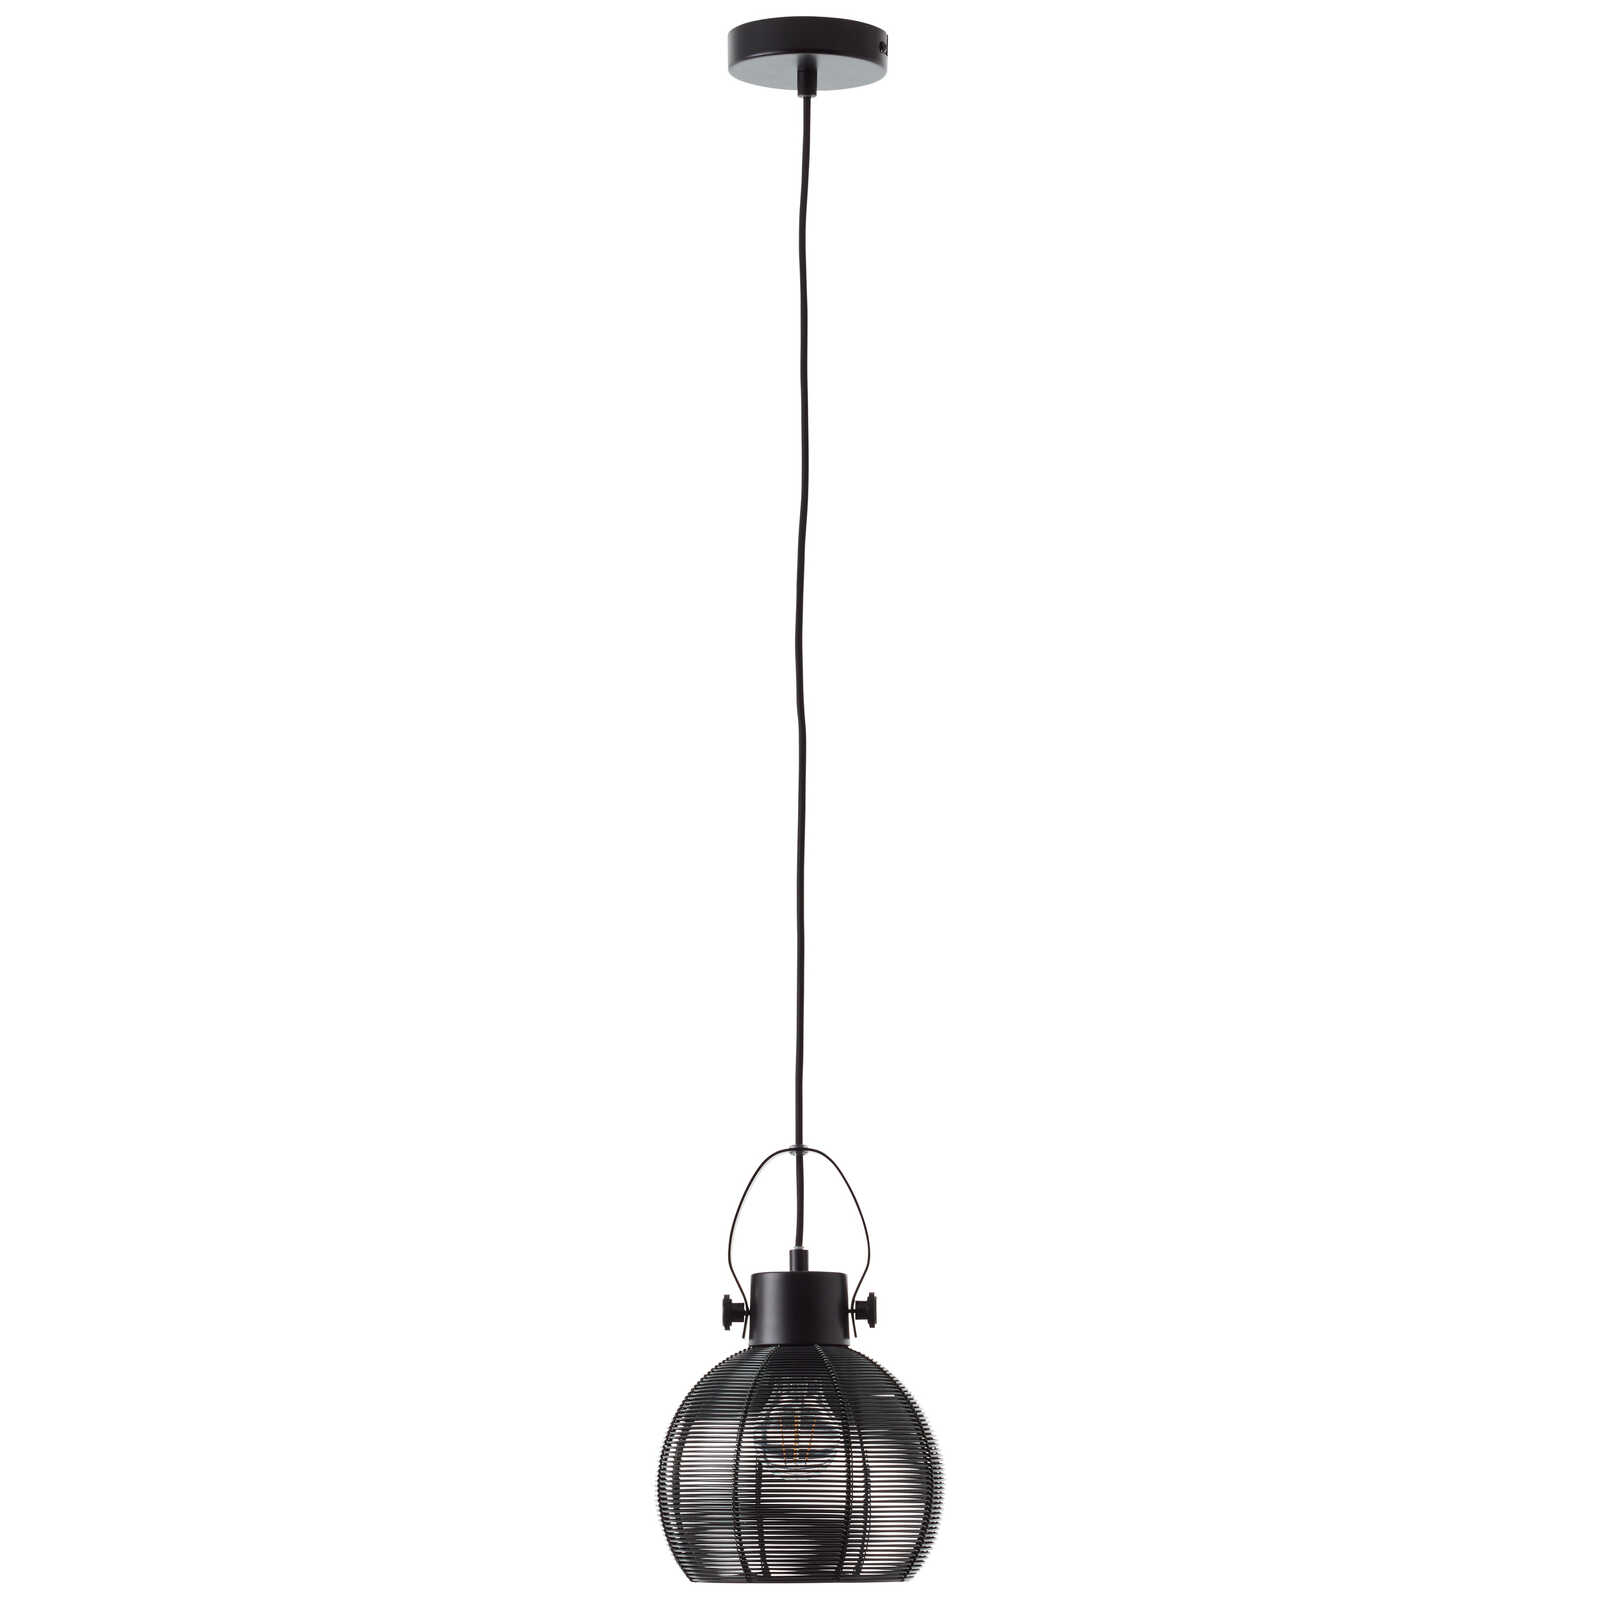             Metalen hanglamp - Milou - Zwart
        